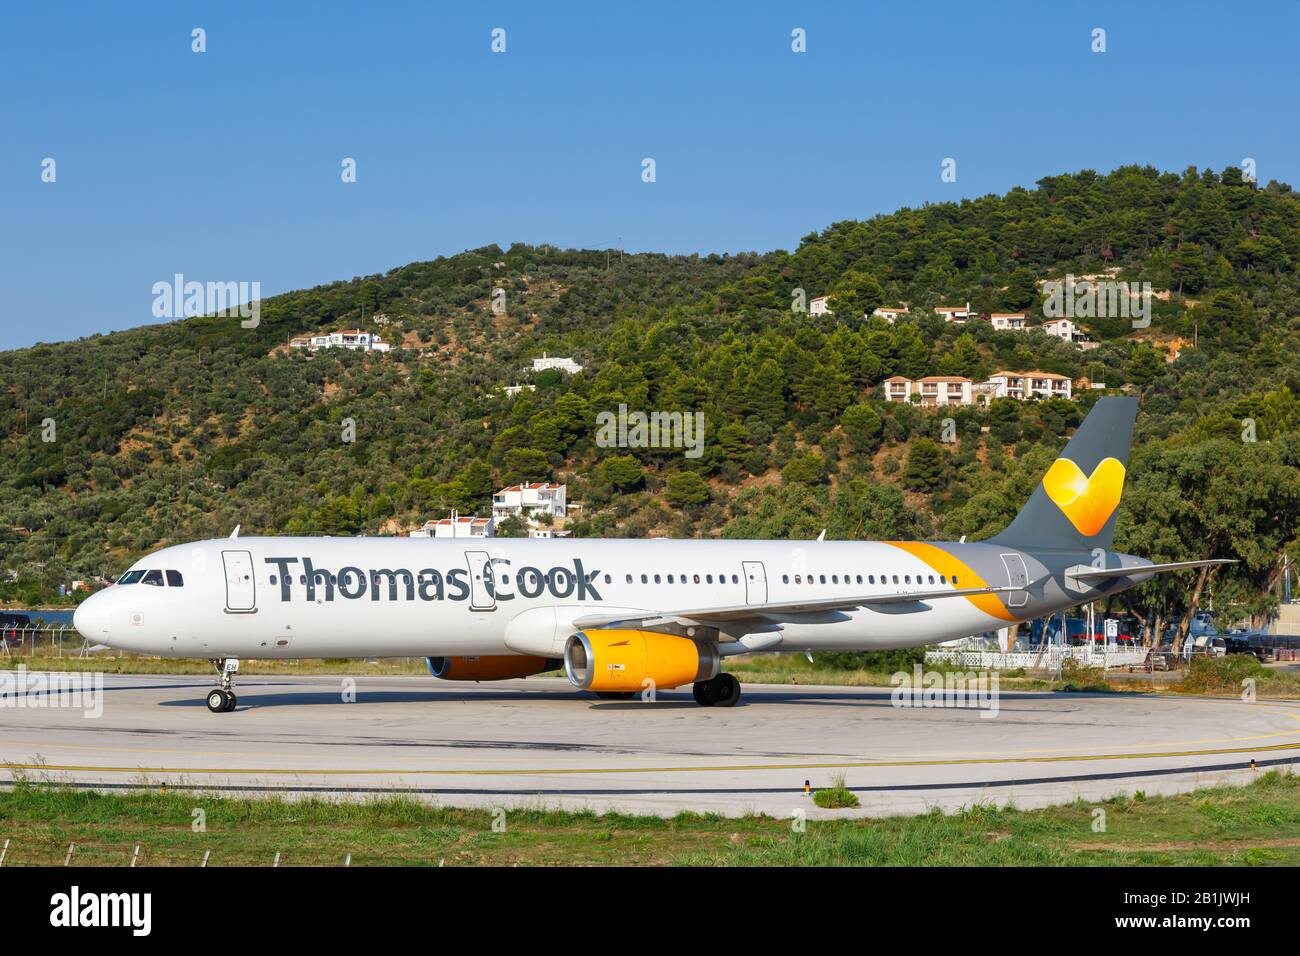 Skiathos, Griechenland - 2. August 2019: Airbus A321 von Thomas Cook auf dem Flughafen Skiathos (JSI) in Griechenland. Airbus ist ein europäischer Flugzeughersteller BA Stockfoto